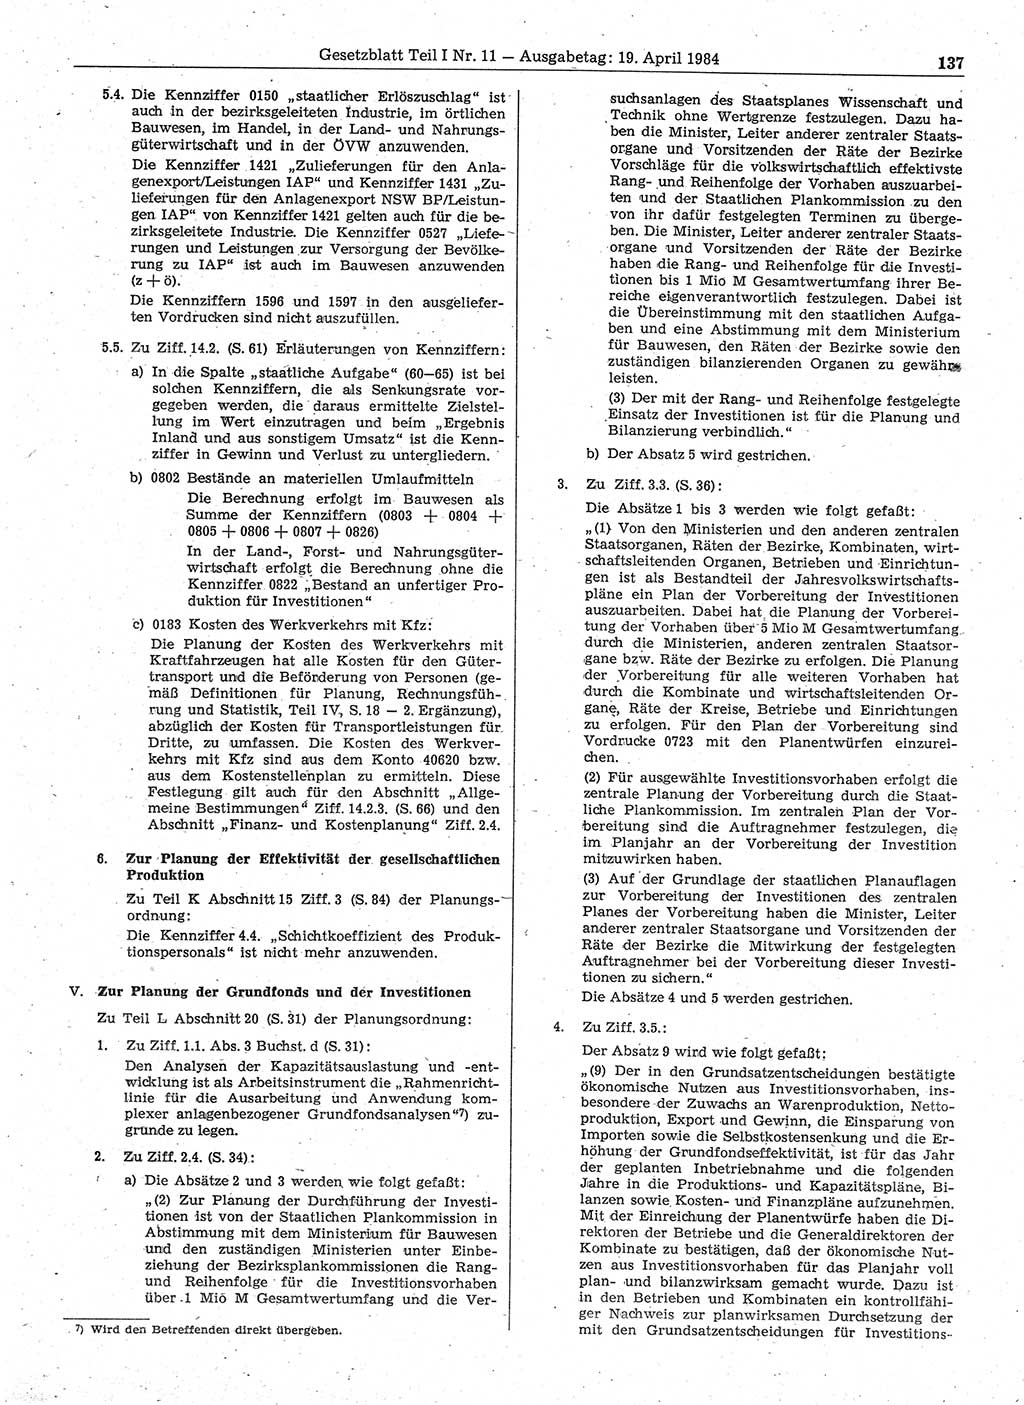 Gesetzblatt (GBl.) der Deutschen Demokratischen Republik (DDR) Teil Ⅰ 1984, Seite 137 (GBl. DDR Ⅰ 1984, S. 137)